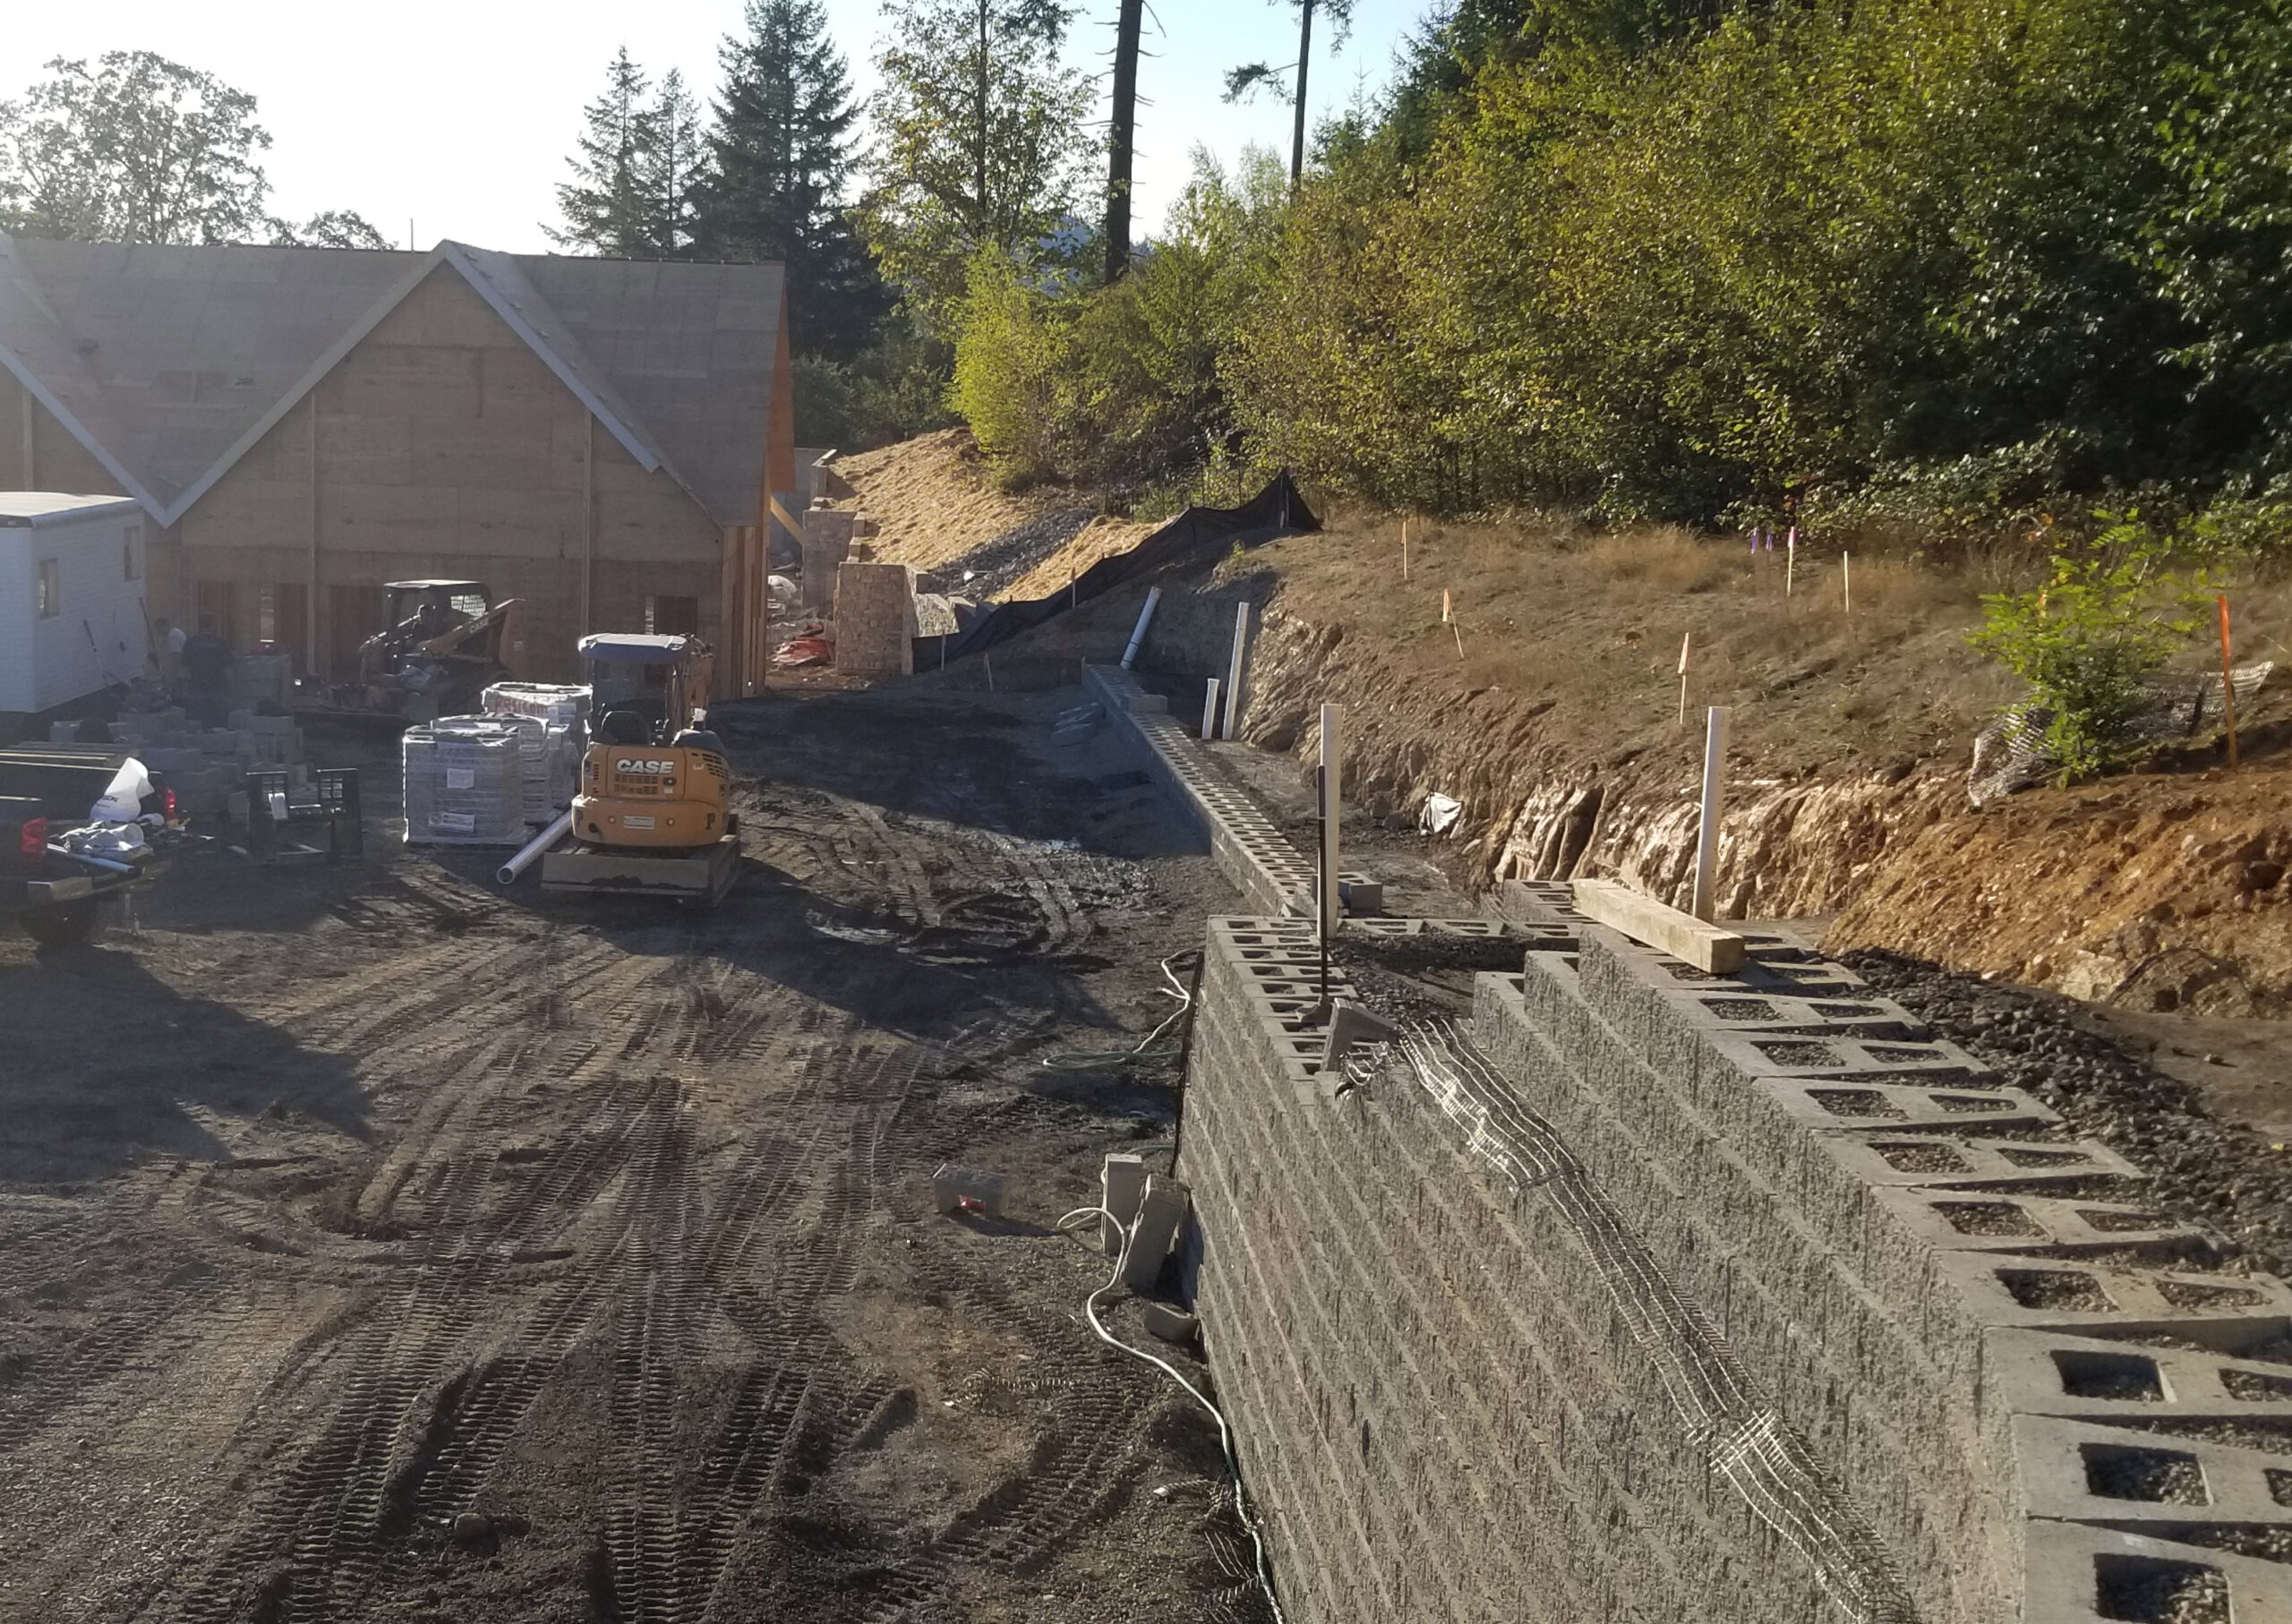 Prodan LLC is a retaining wall construction company